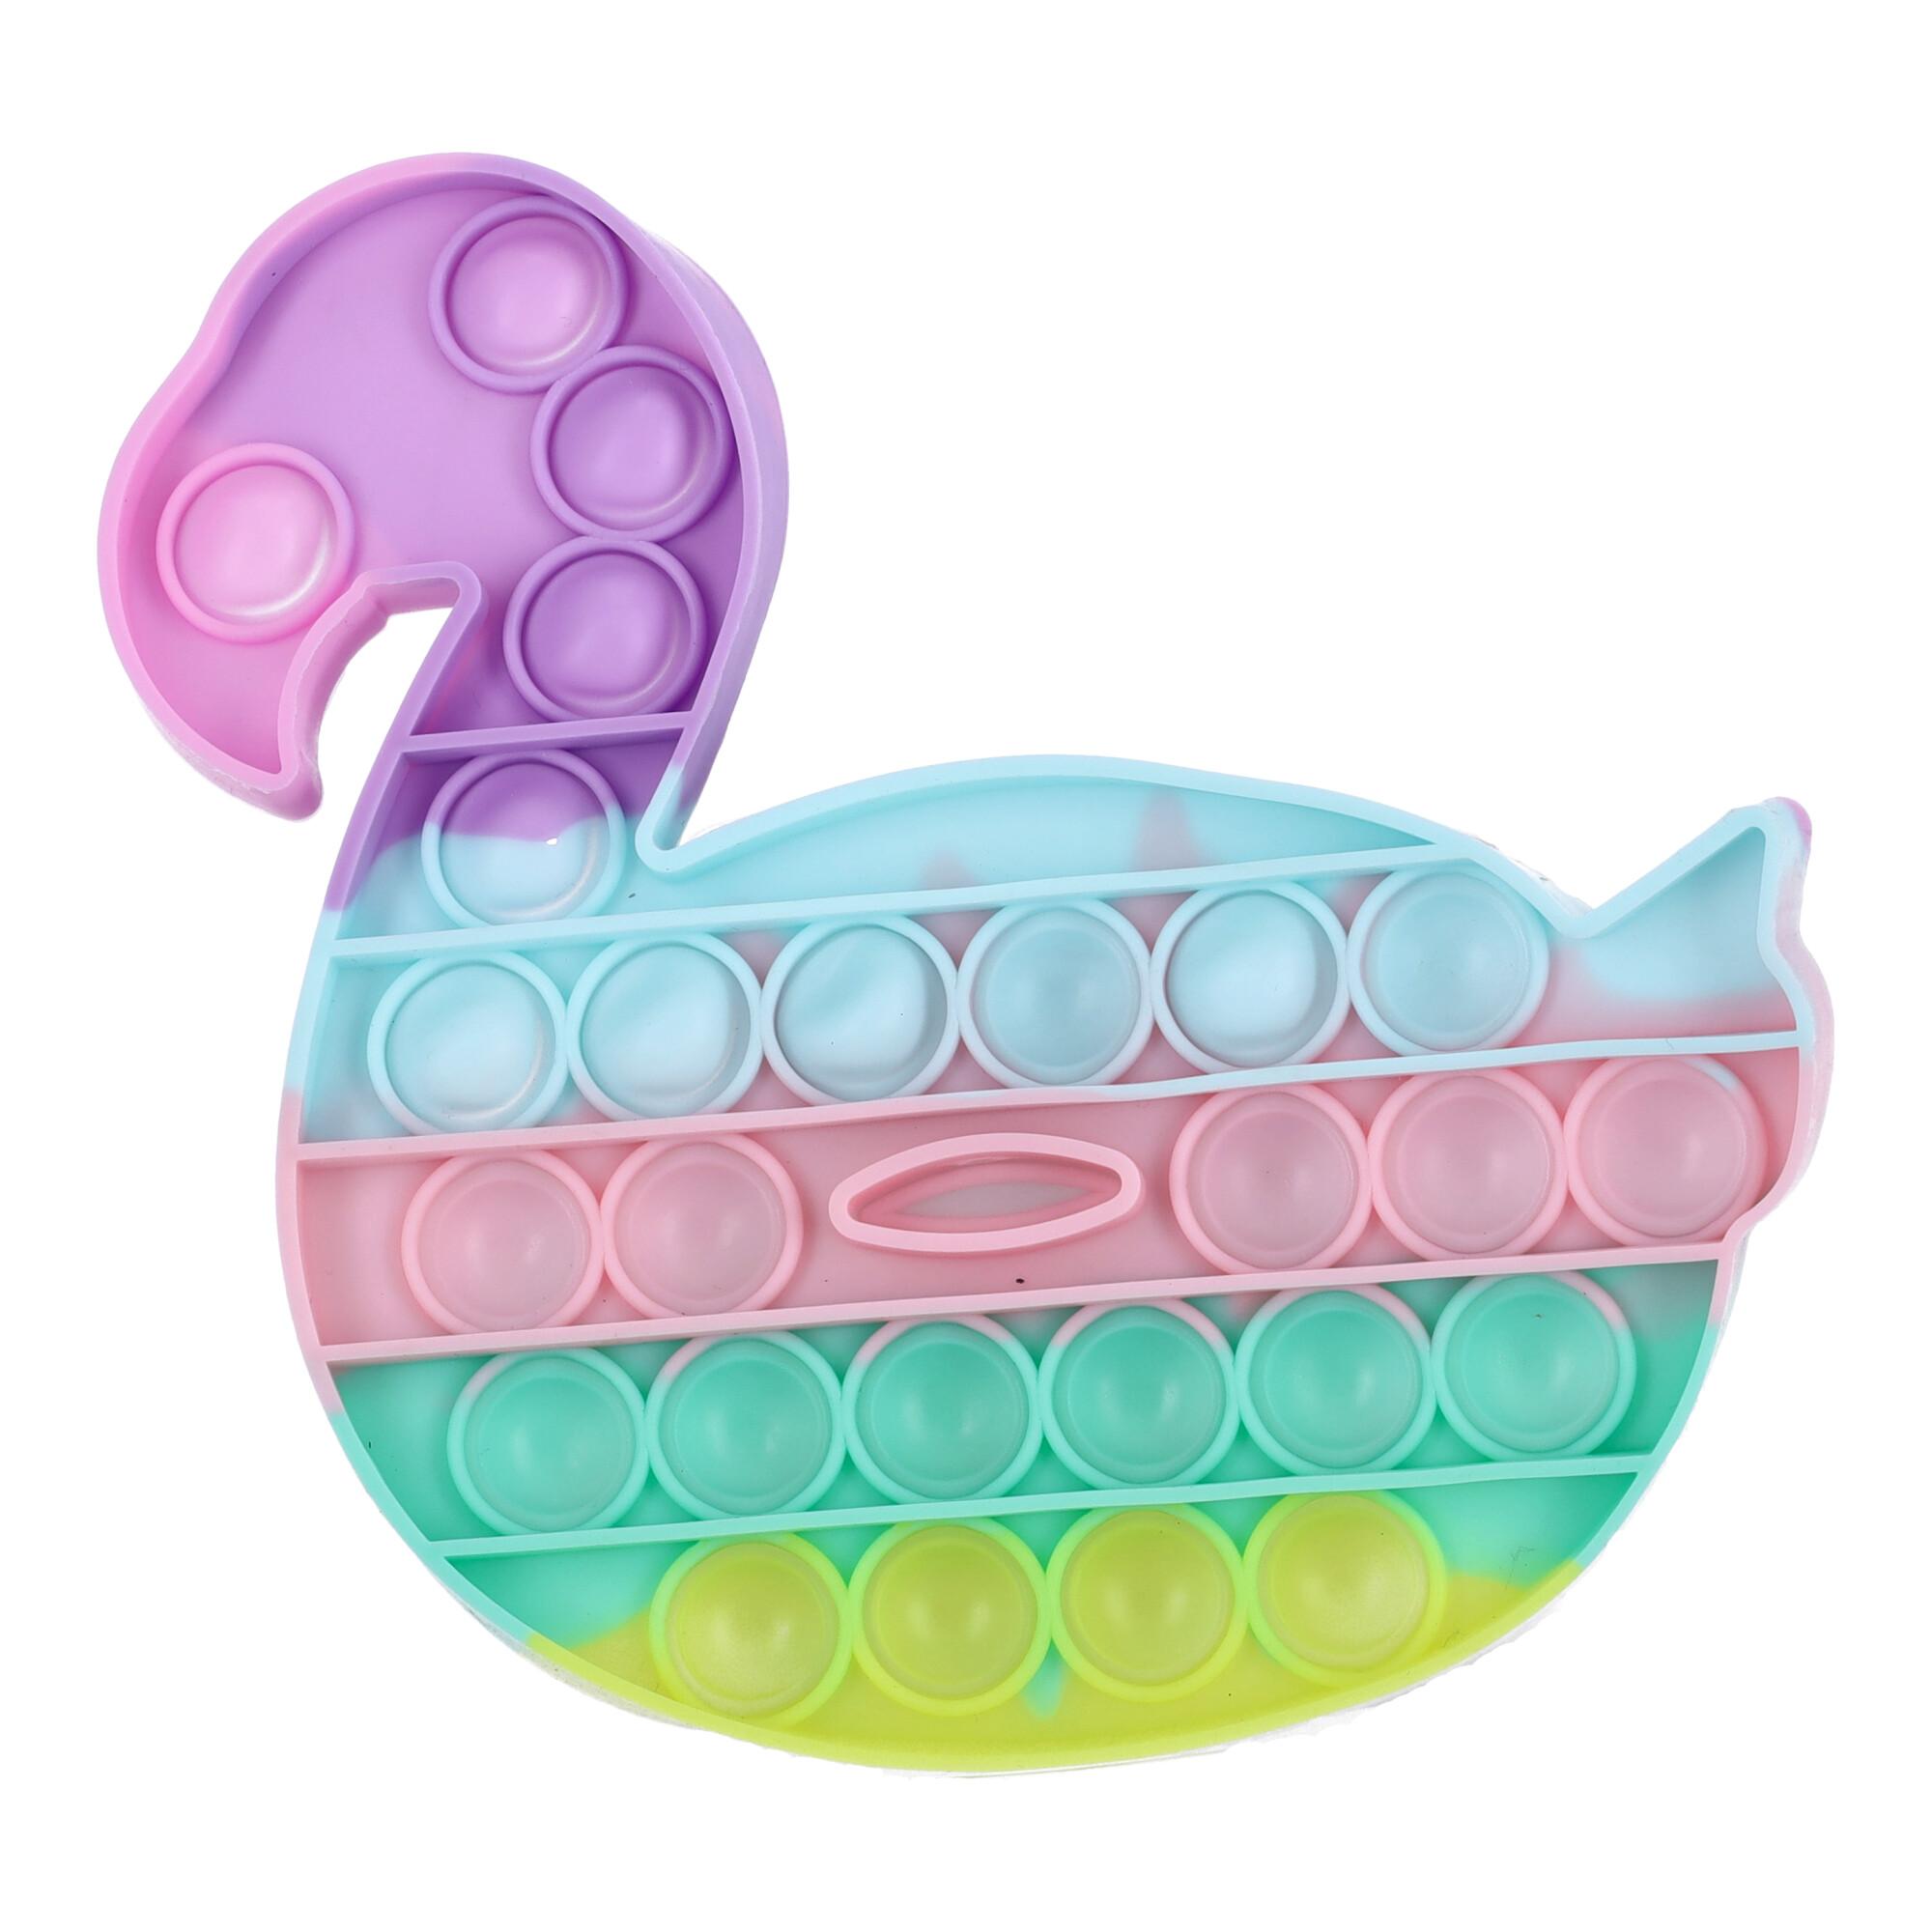 Swan-shaped anti-stress sensory toy